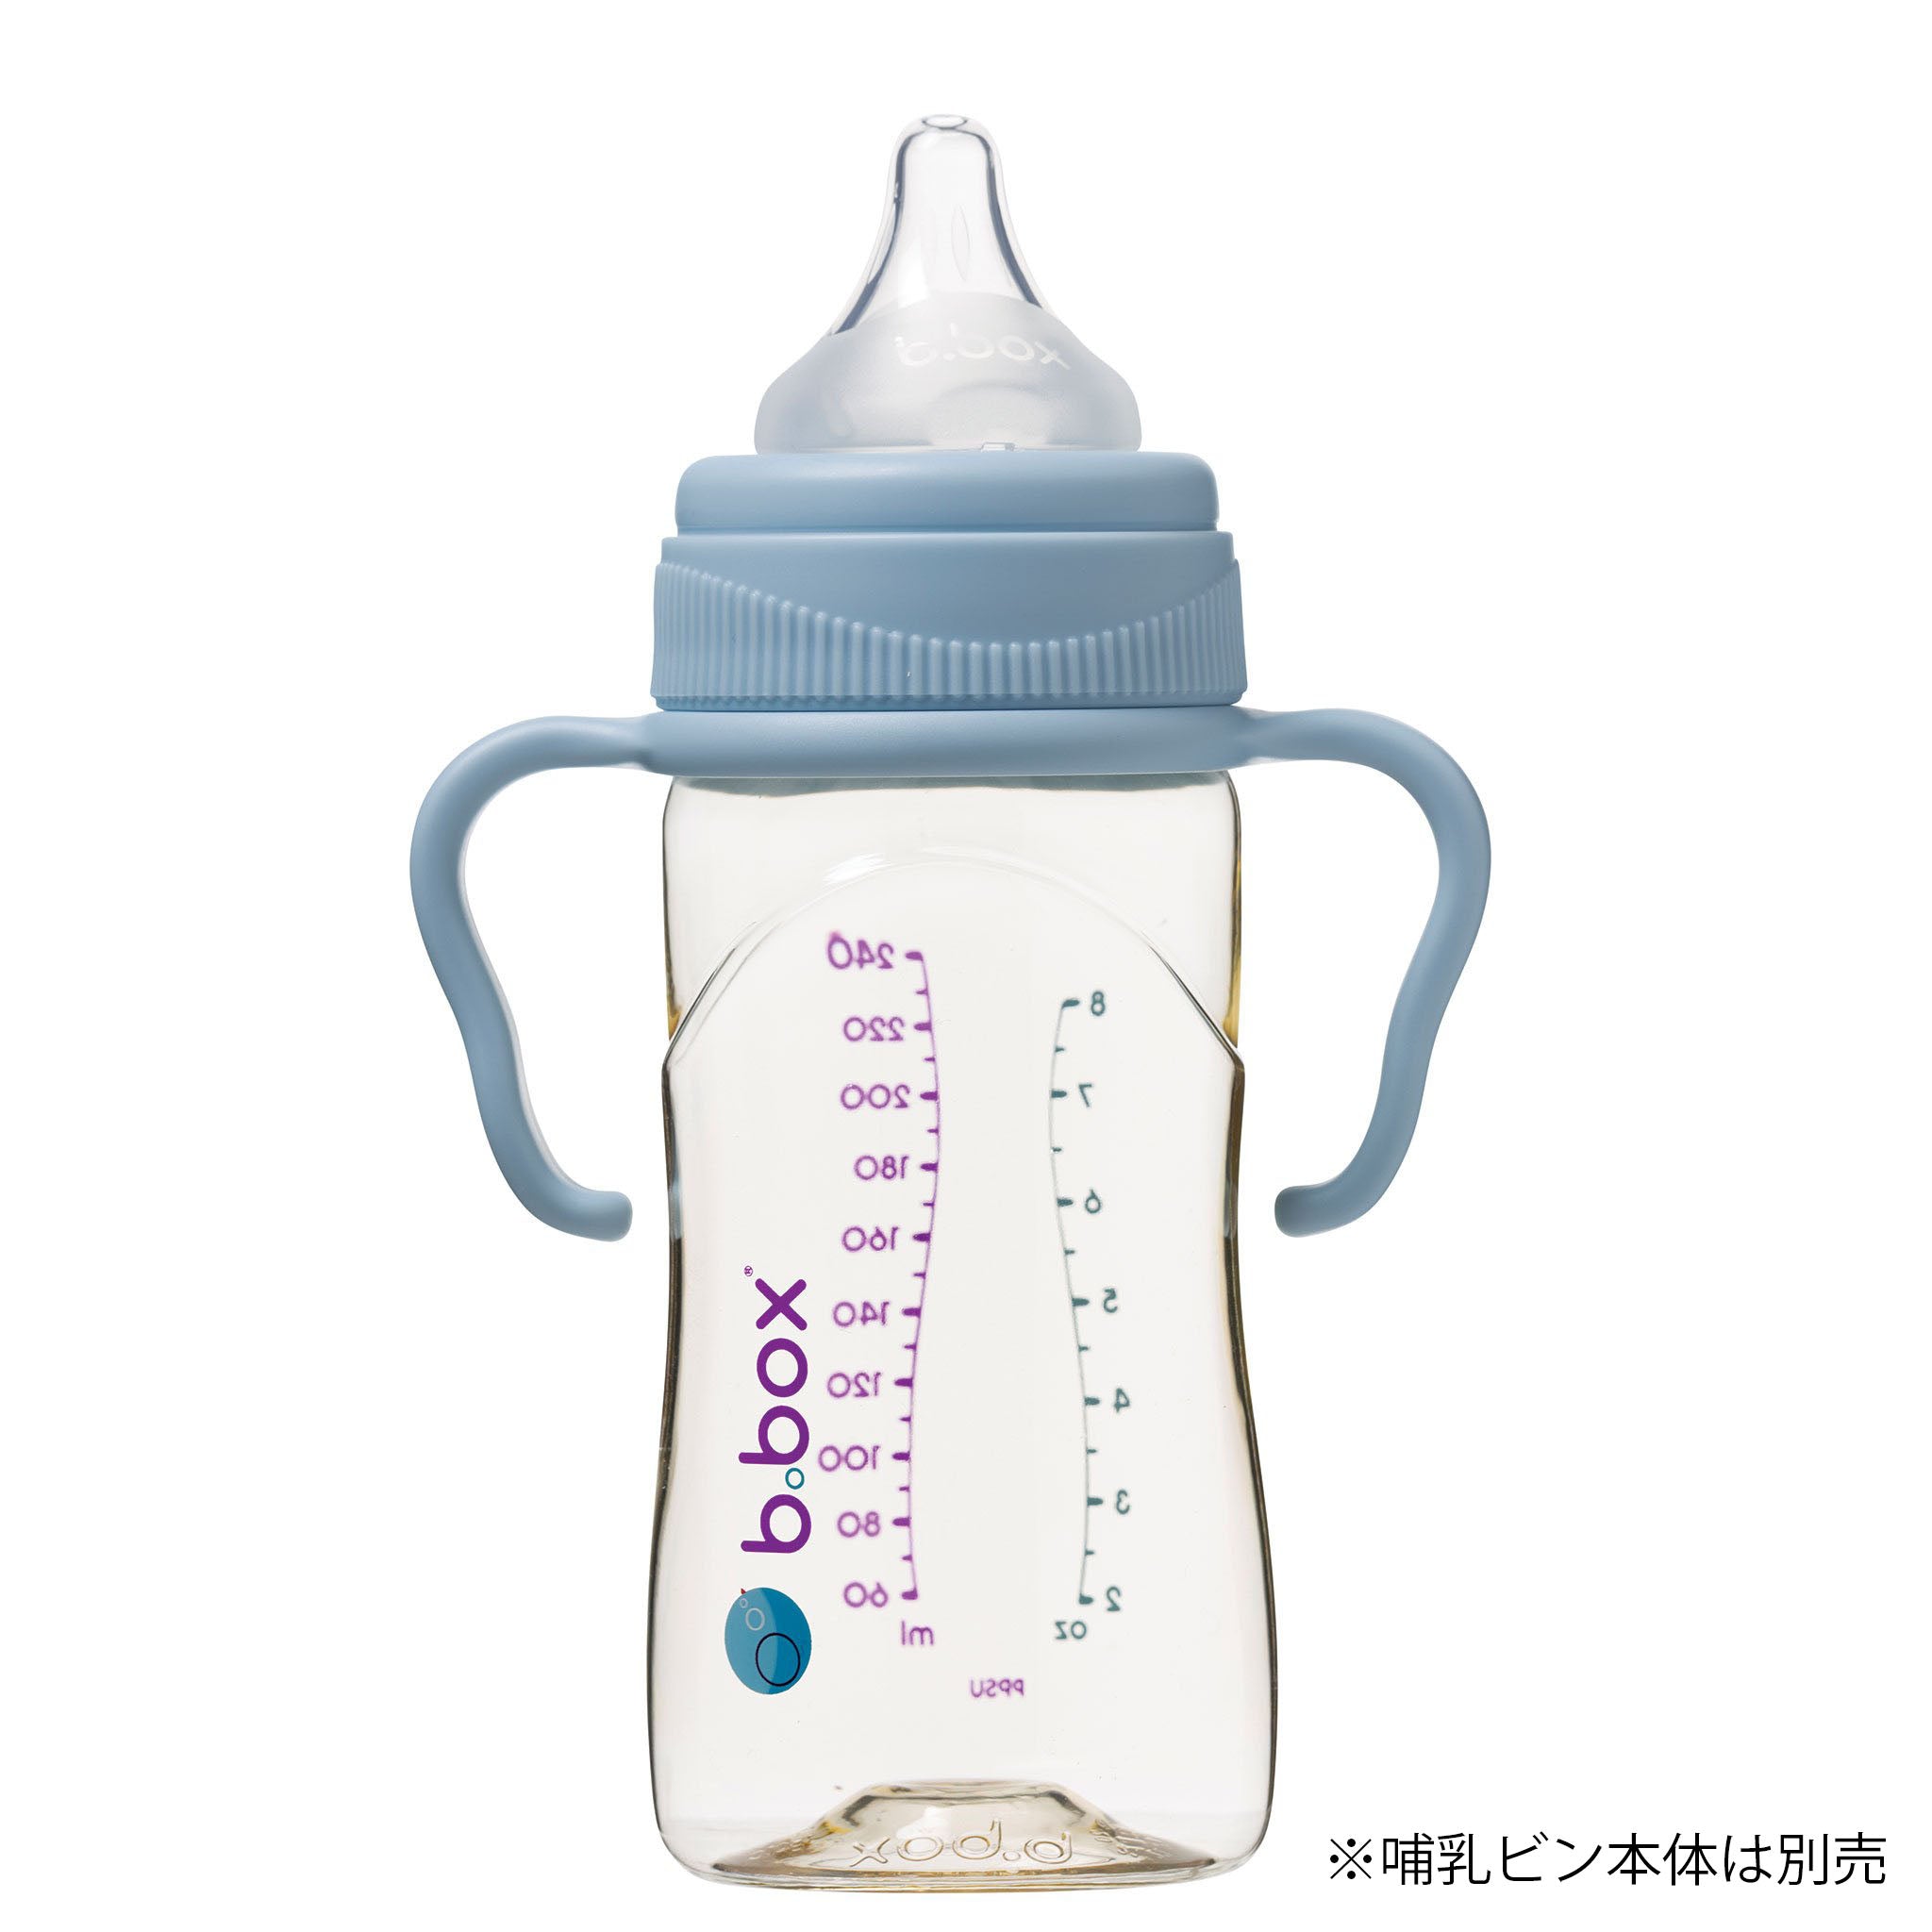 PPSU製哺乳瓶専用ハンドル/PPSU Baby Bottle Handles - Lullaby Blue